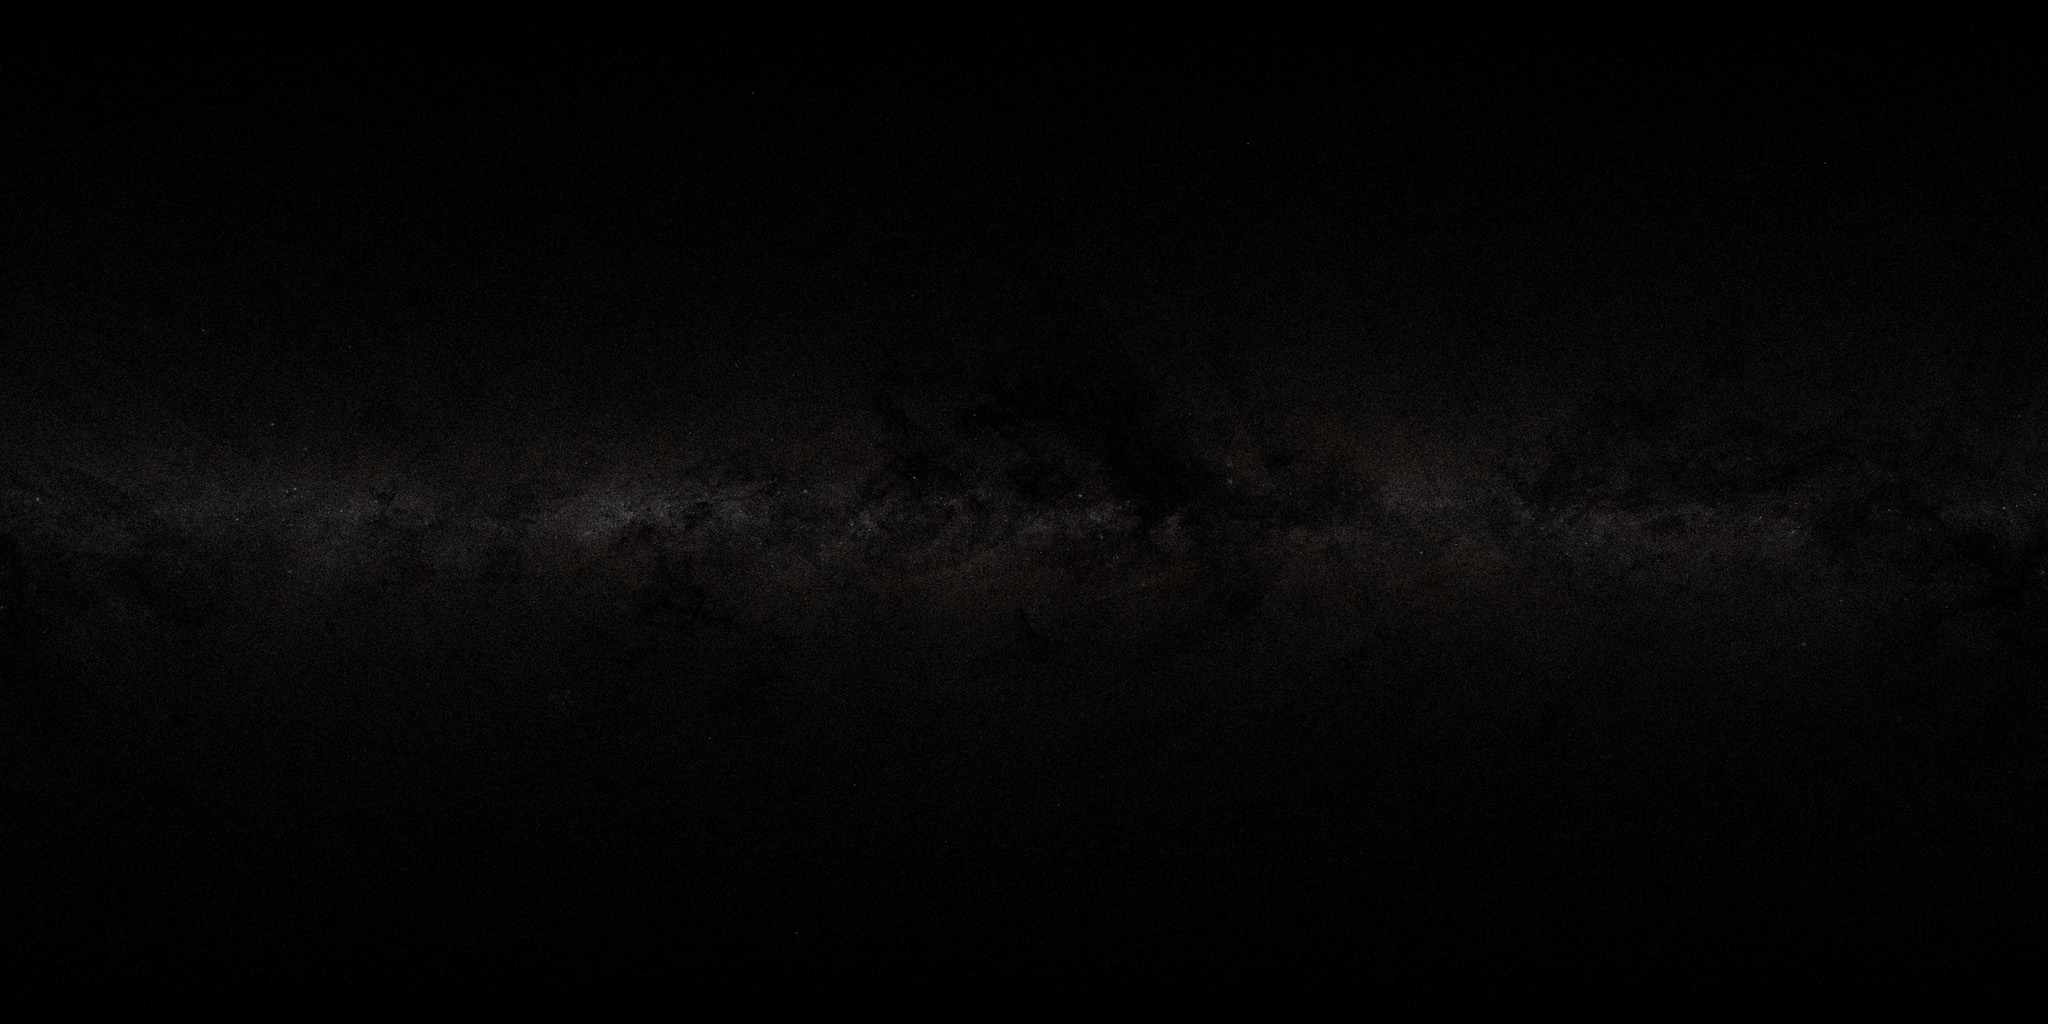 2048 x 1024 - Tycho 2.0 (Galaktische Koordinaten).jpg